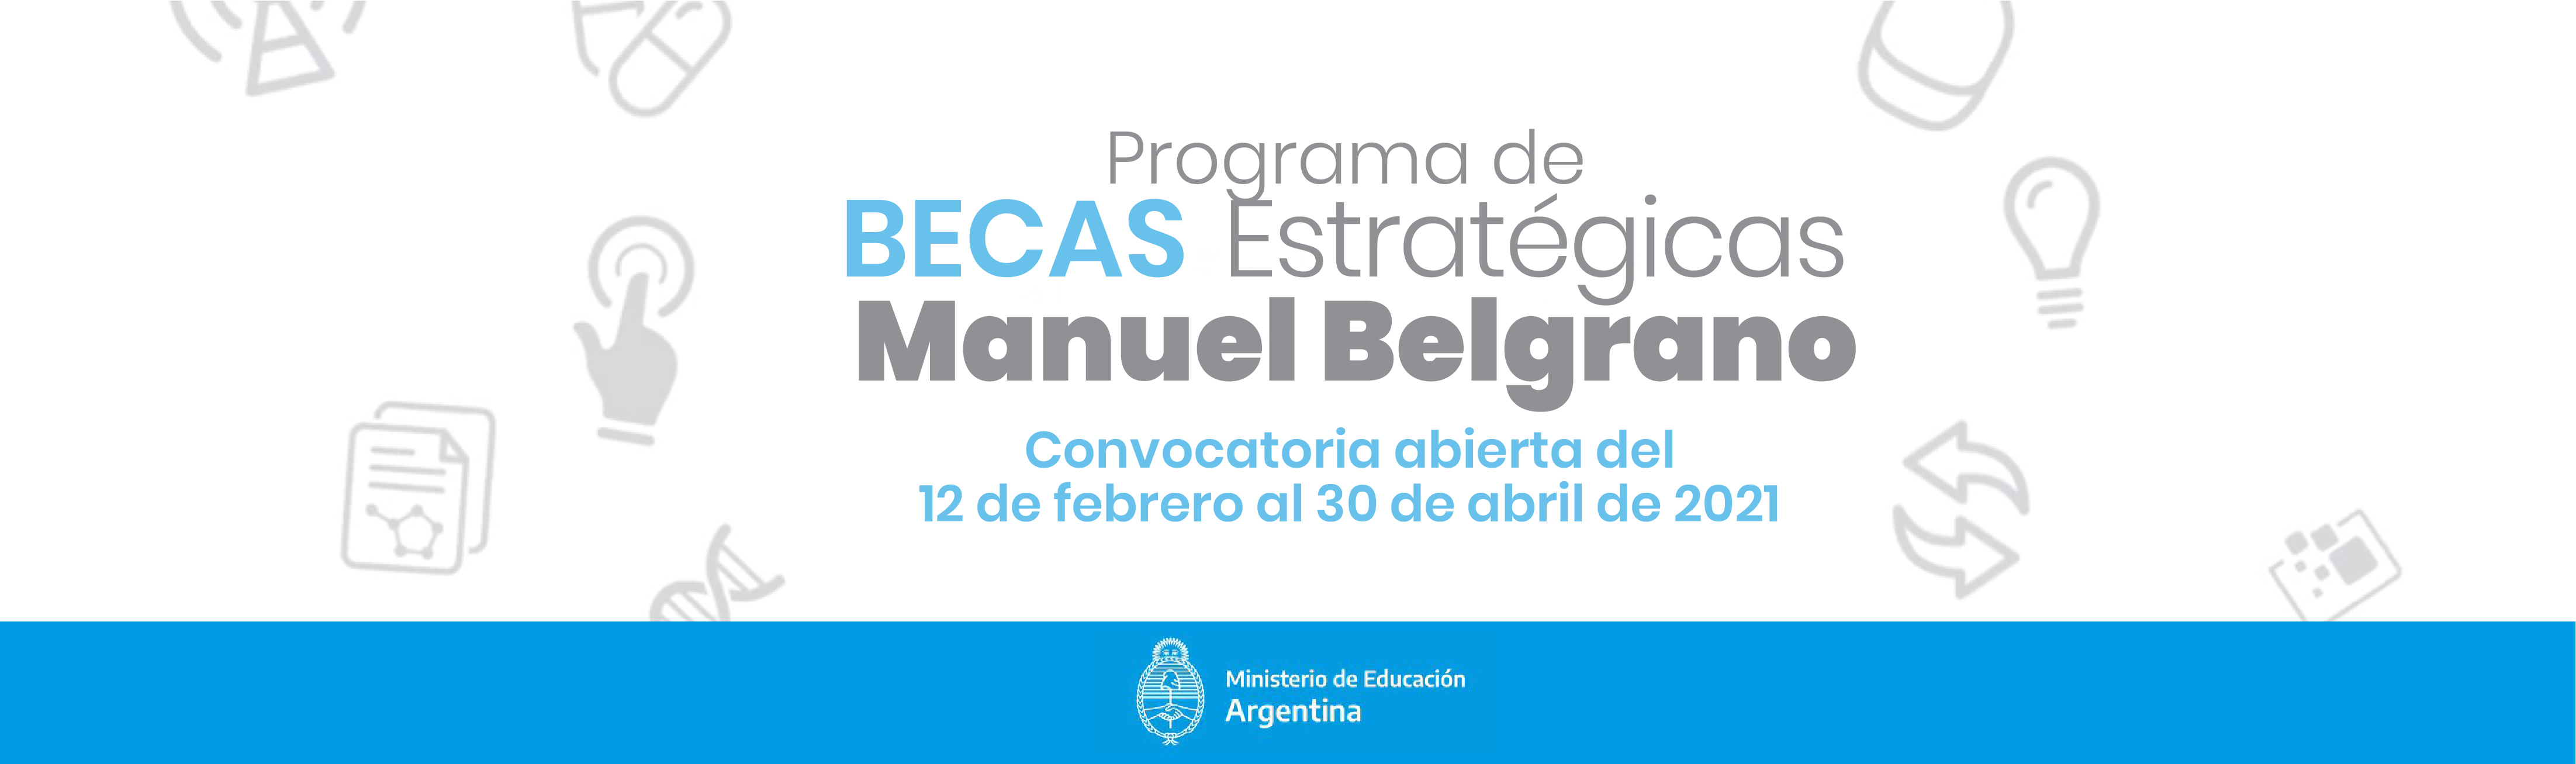 Becas Estratégicas Manuel Belgrano 2021 UNPAZ